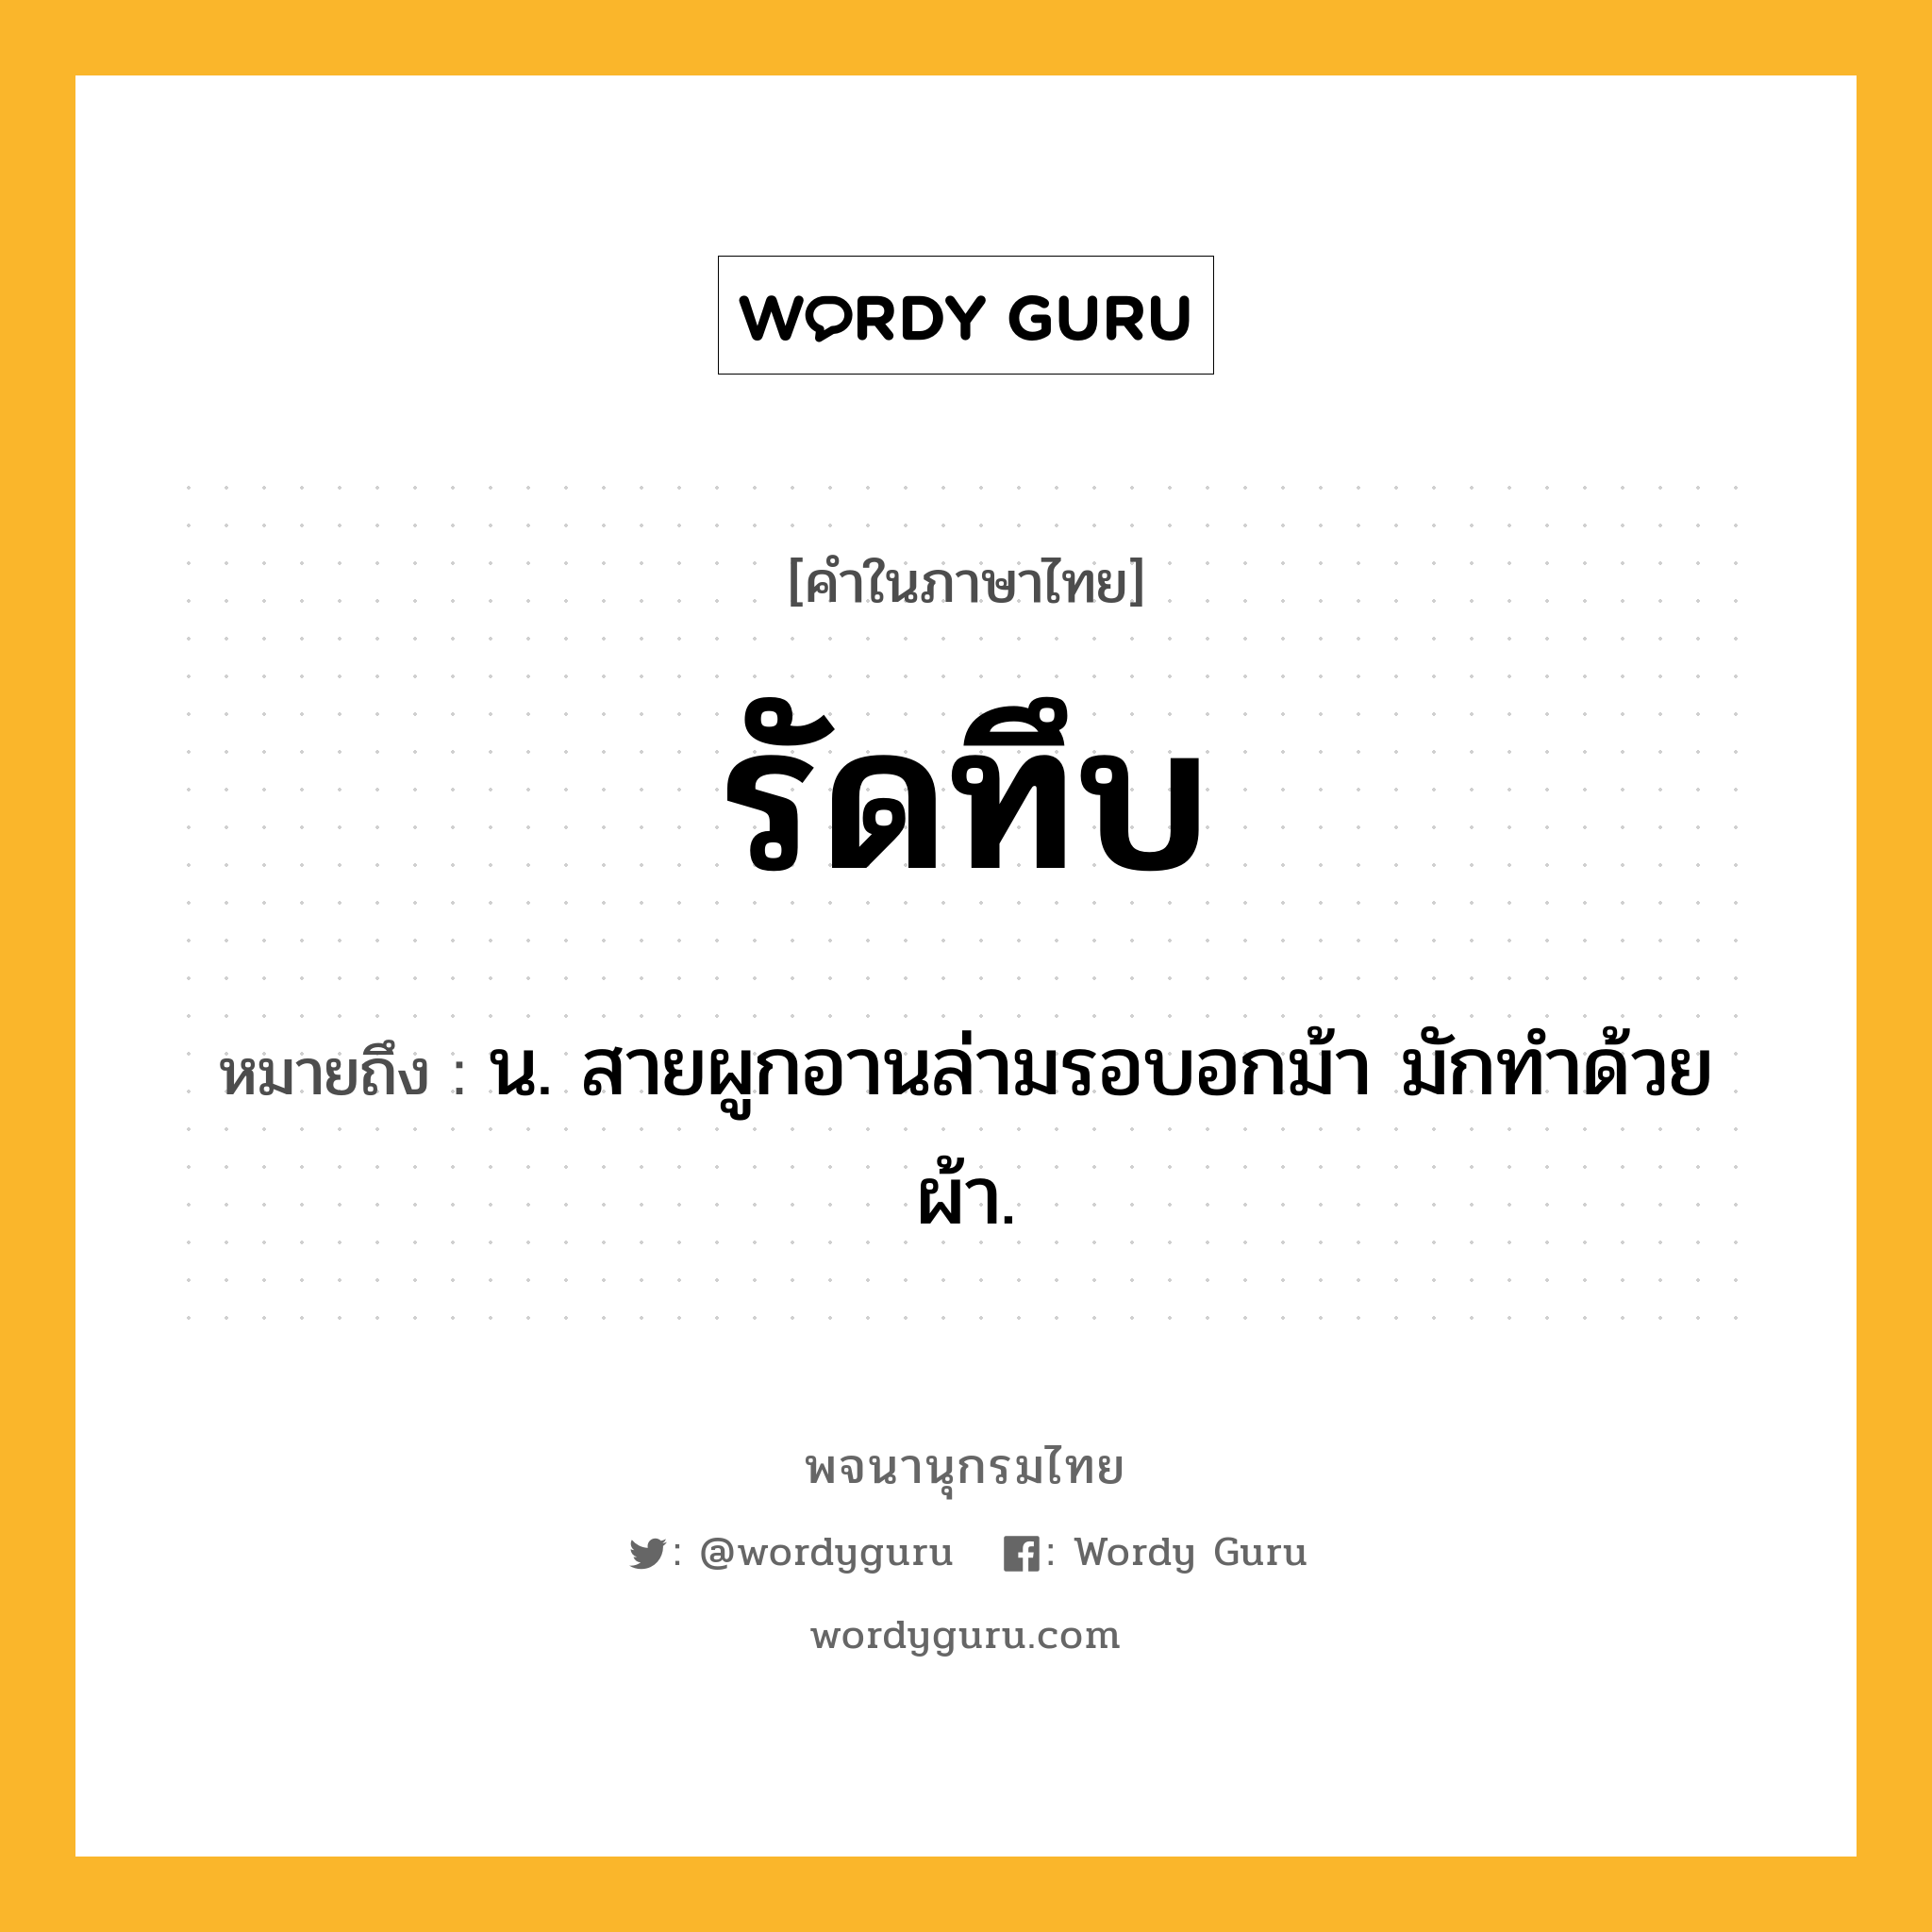 รัดทึบ ความหมาย หมายถึงอะไร?, คำในภาษาไทย รัดทึบ หมายถึง น. สายผูกอานล่ามรอบอกม้า มักทําด้วยผ้า.